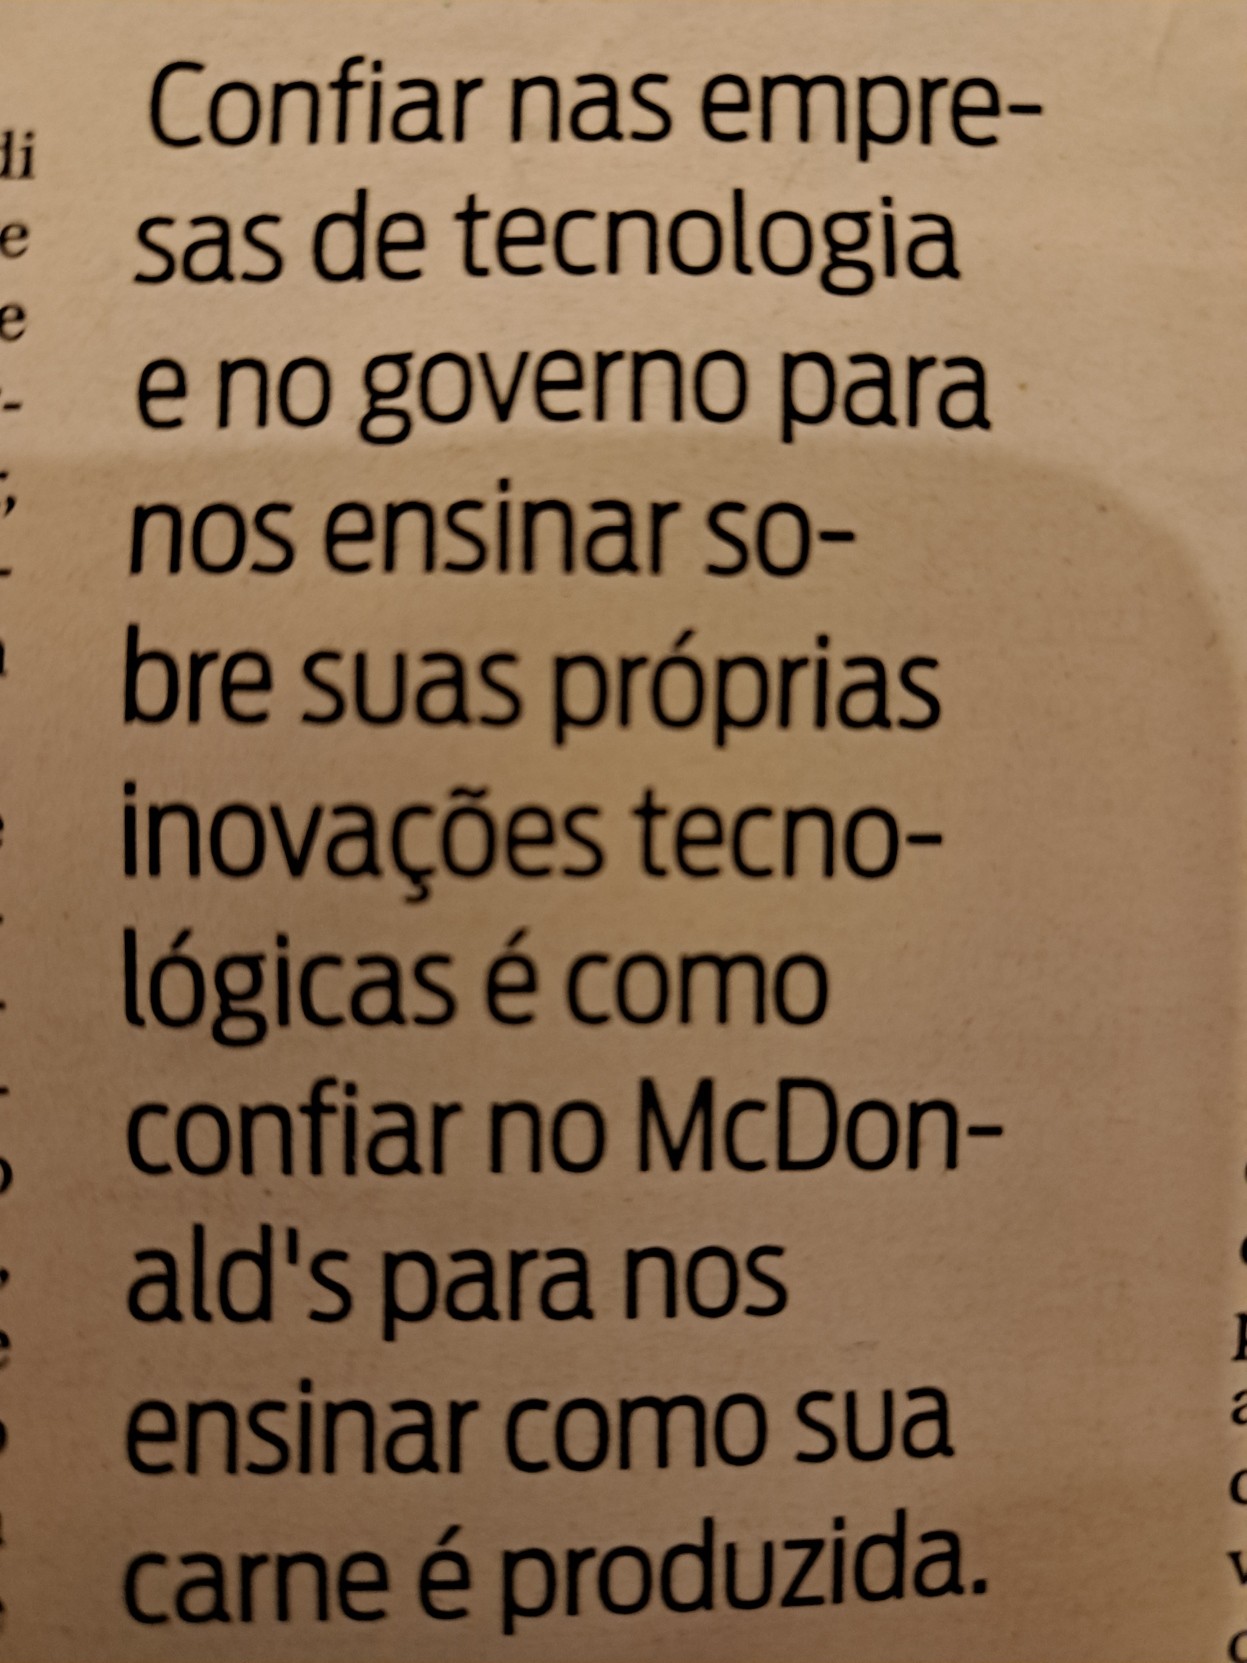 Foto ao Jornal Mapa, onde se lê: "Confiar nas empresas de tecnologia e no governo para nos ensinar sobre suas próprias inovações tecnológicas é como confiar no McDonald's para nos ensinar como sua carne é prodizida."